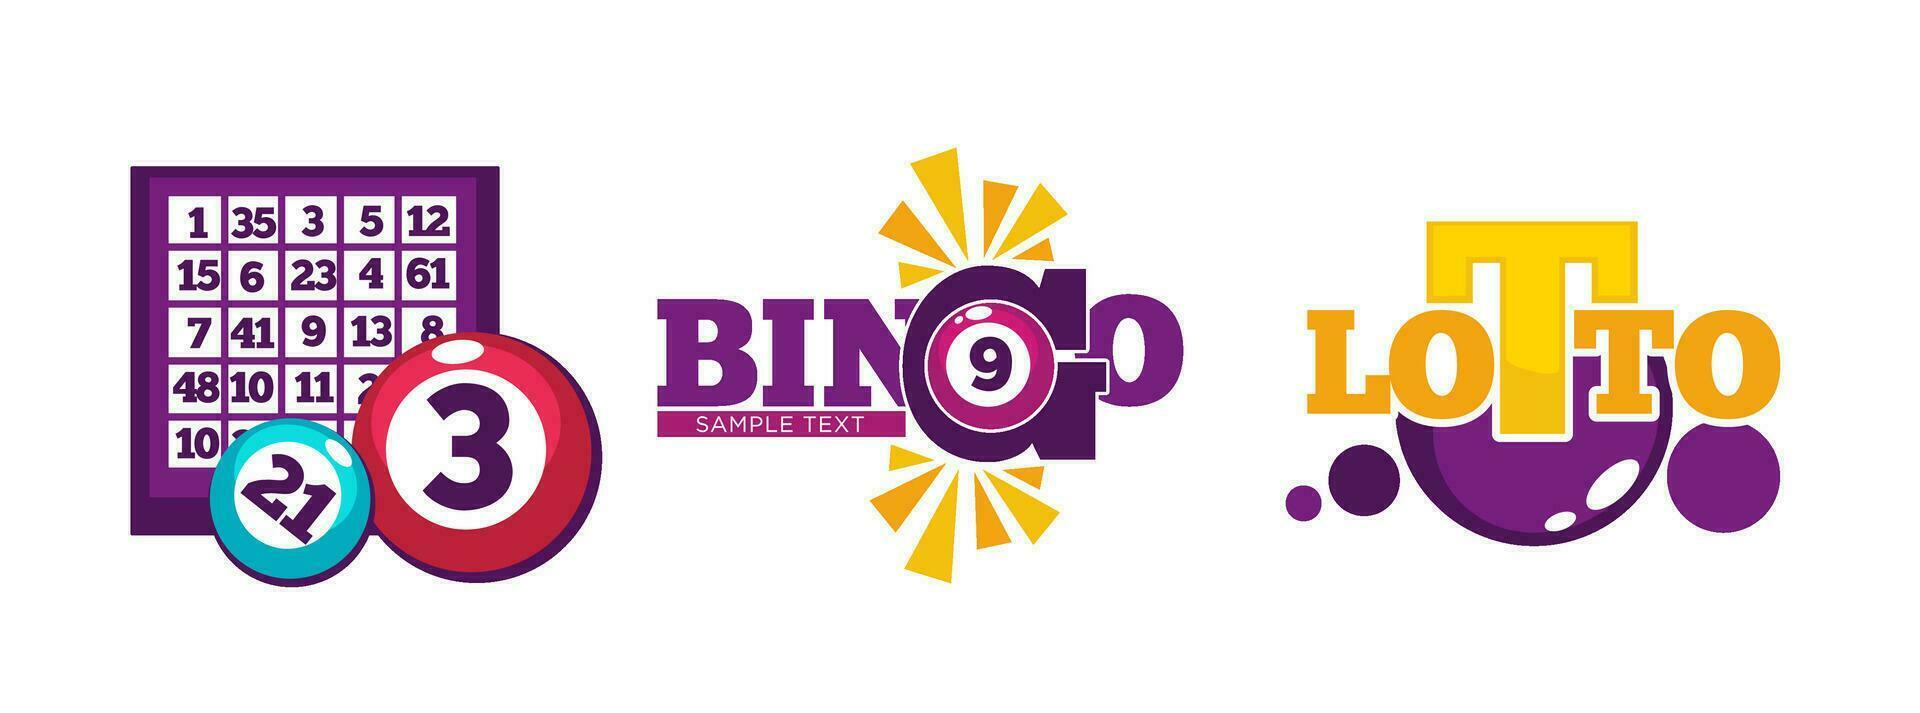 bingo y loto, juego y jugando juegos vector